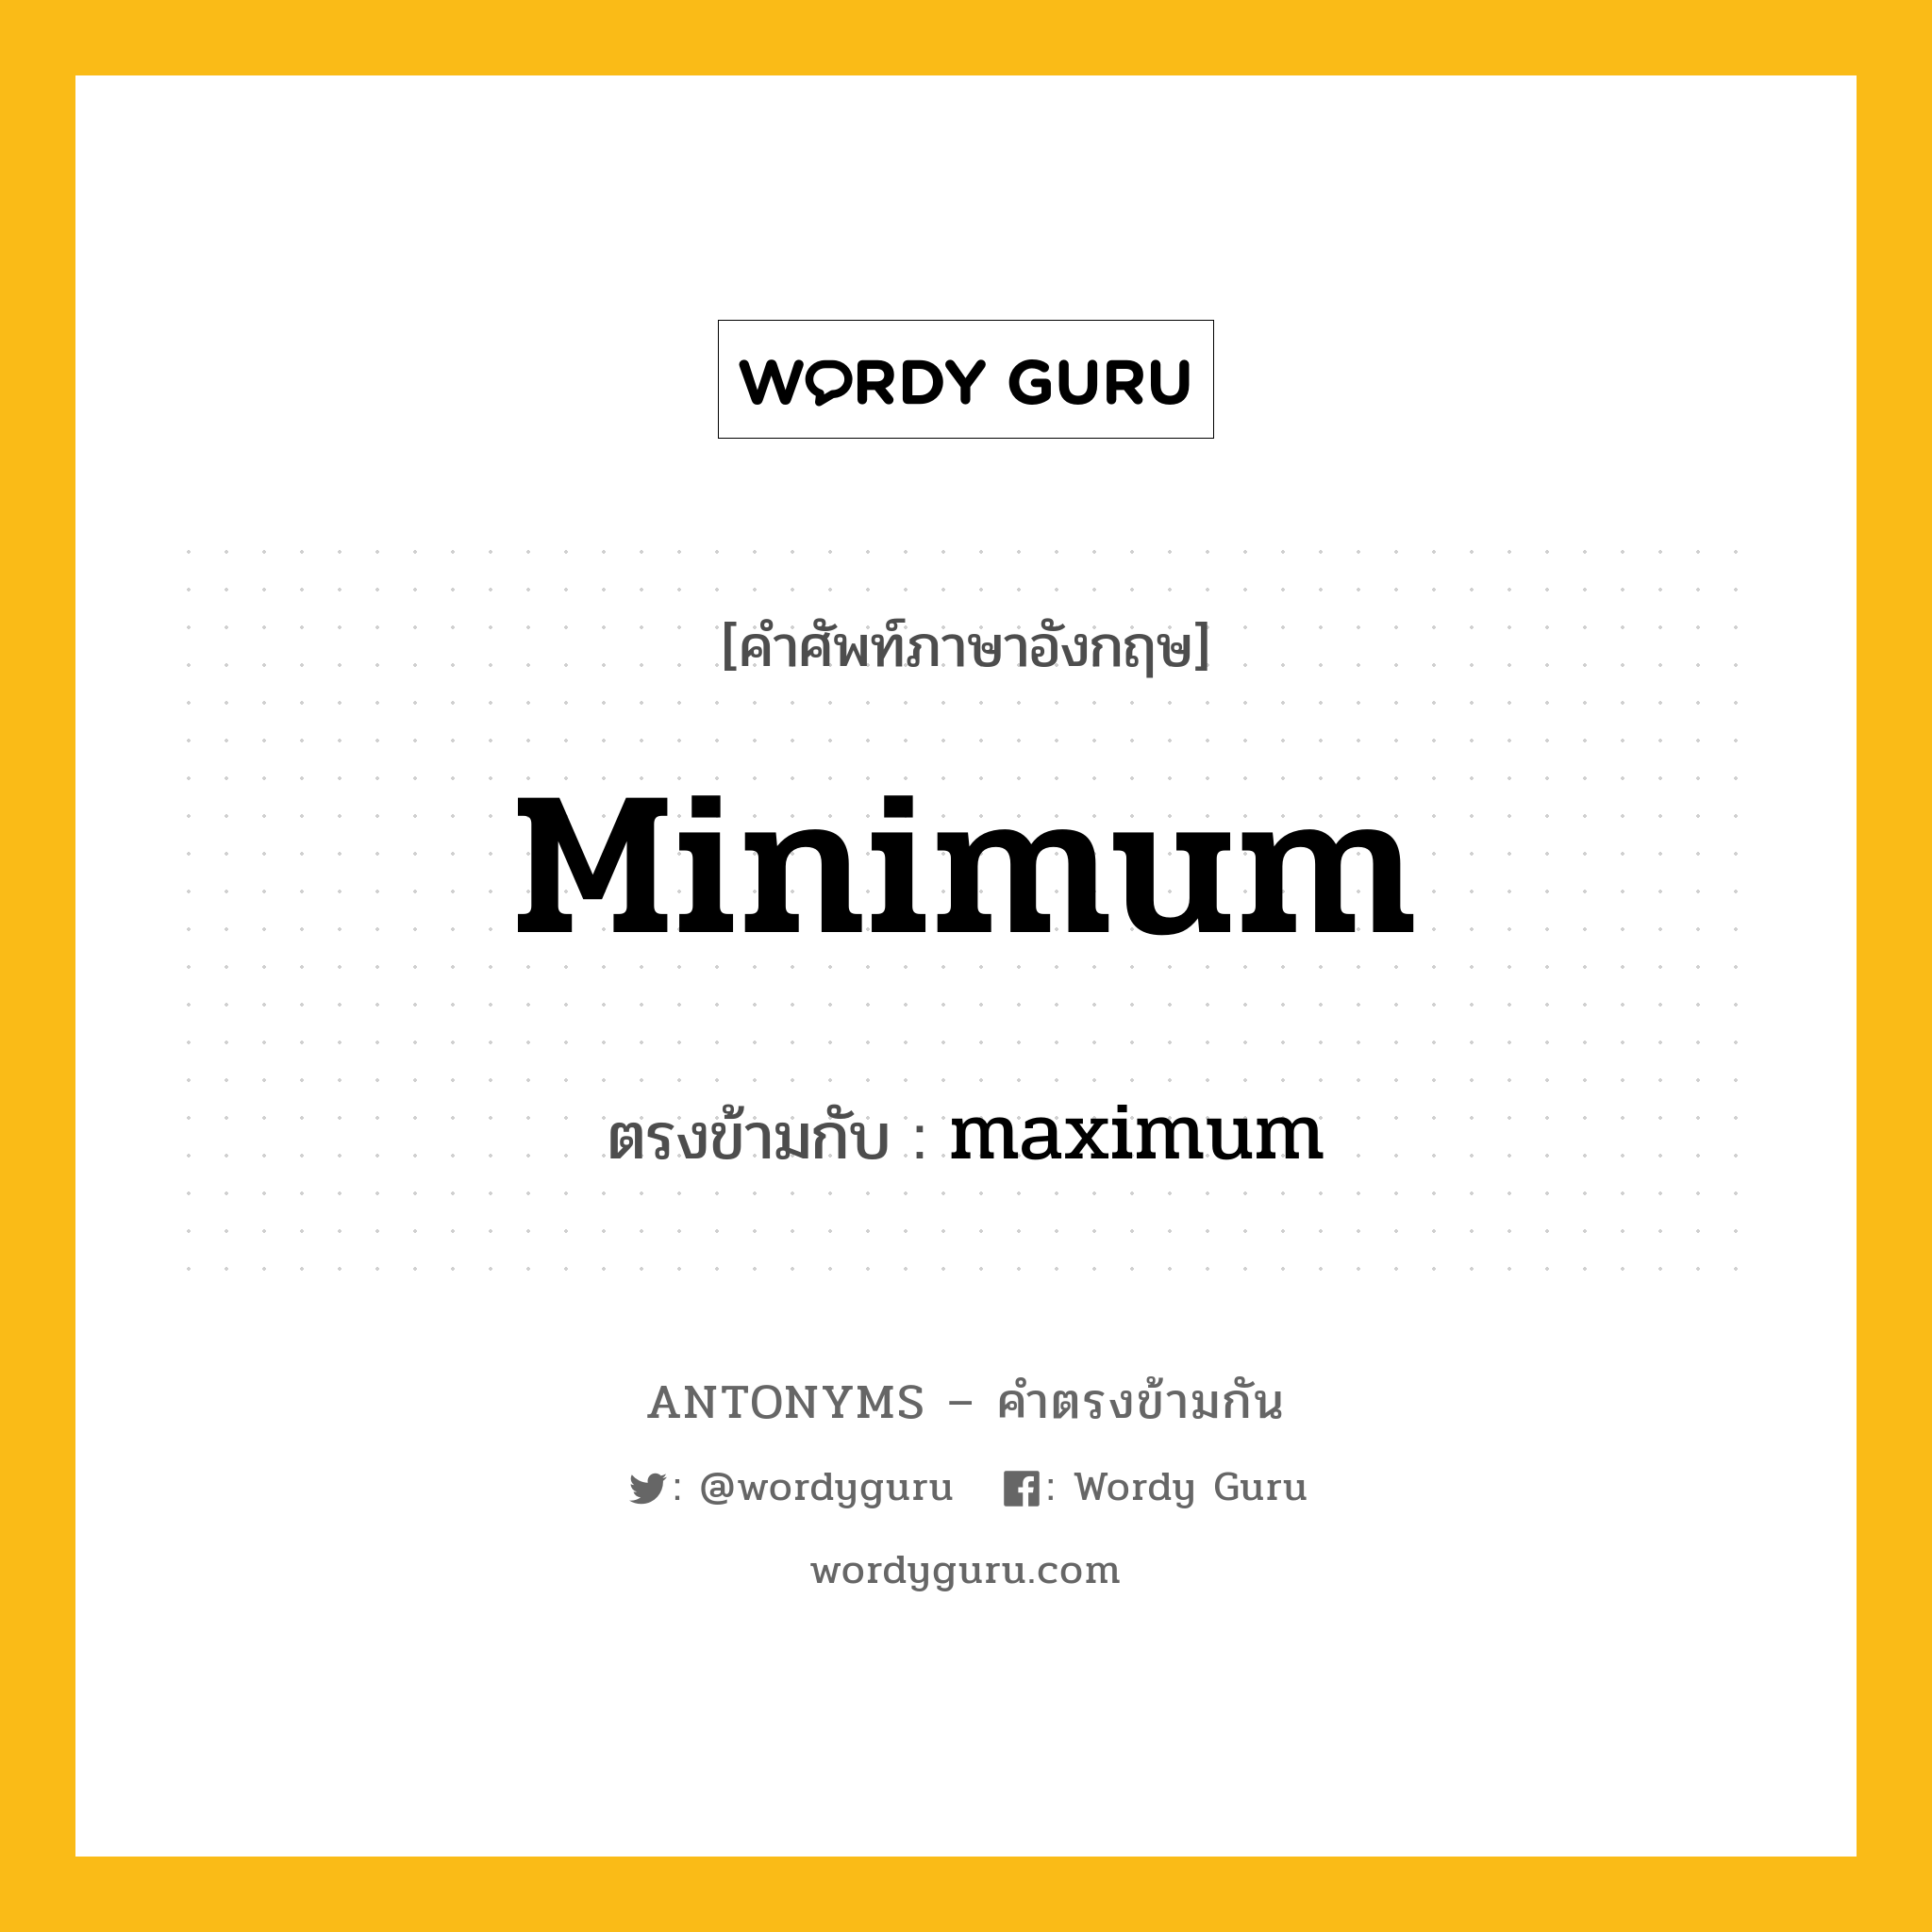 minimum เป็นคำตรงข้ามกับคำไหนบ้าง?, คำศัพท์ภาษาอังกฤษ minimum ตรงข้ามกับ maximum หมวด maximum